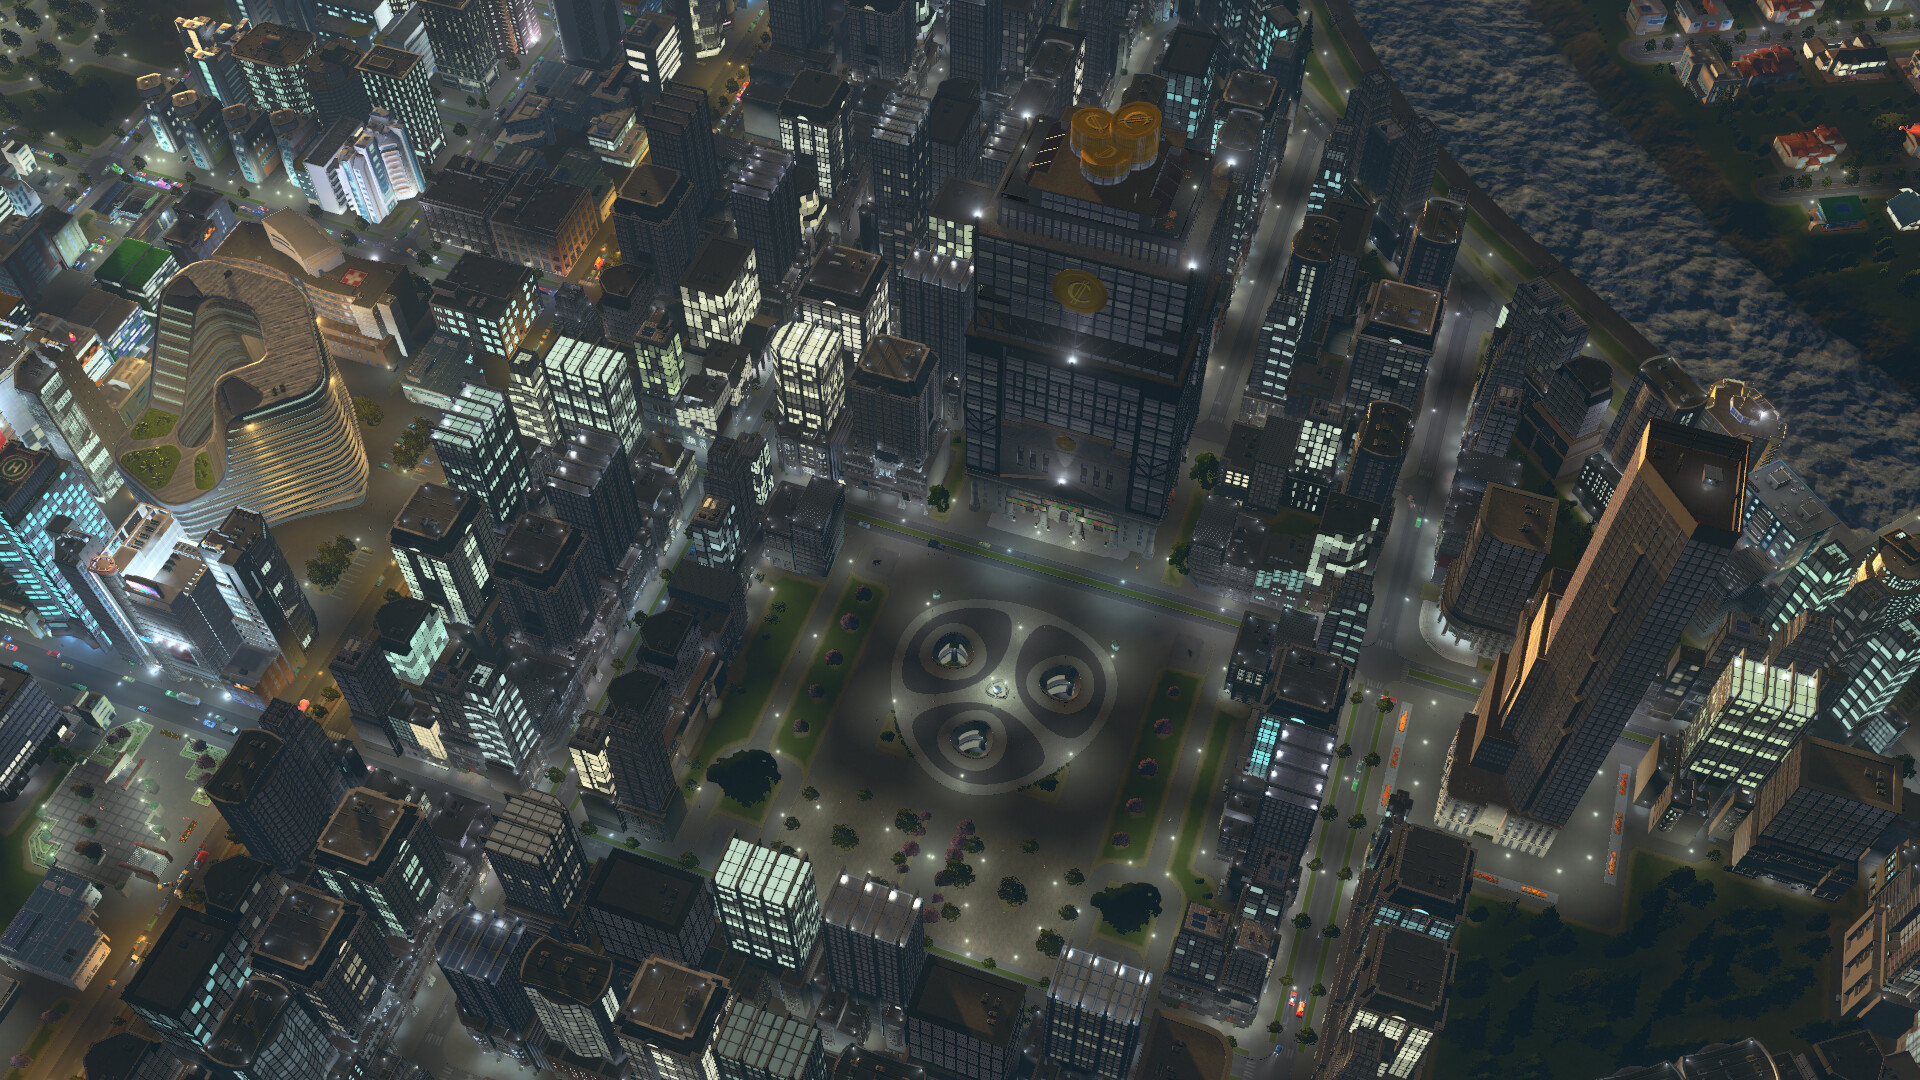 Cities: Skylines II Free Download « IGGGAMES